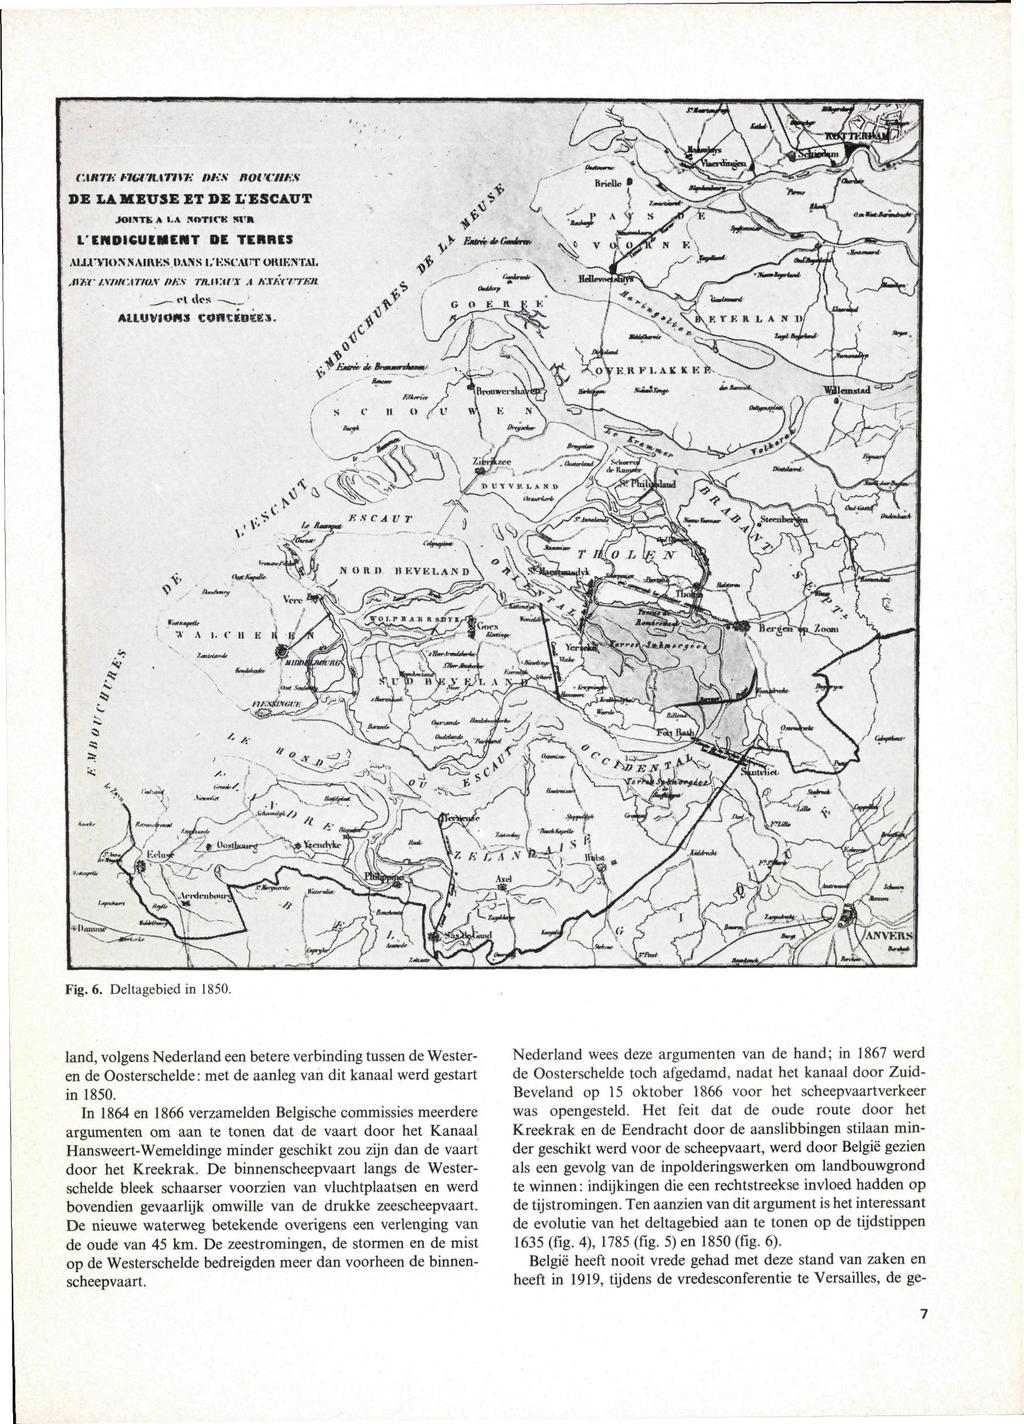 Fig. 6. Deltagebied in 1850. land, volgens Nederland een betere verbinding tussen de Westeren de Oosterschelde: met de aanleg van dit kanaal werd gestart in 1850.